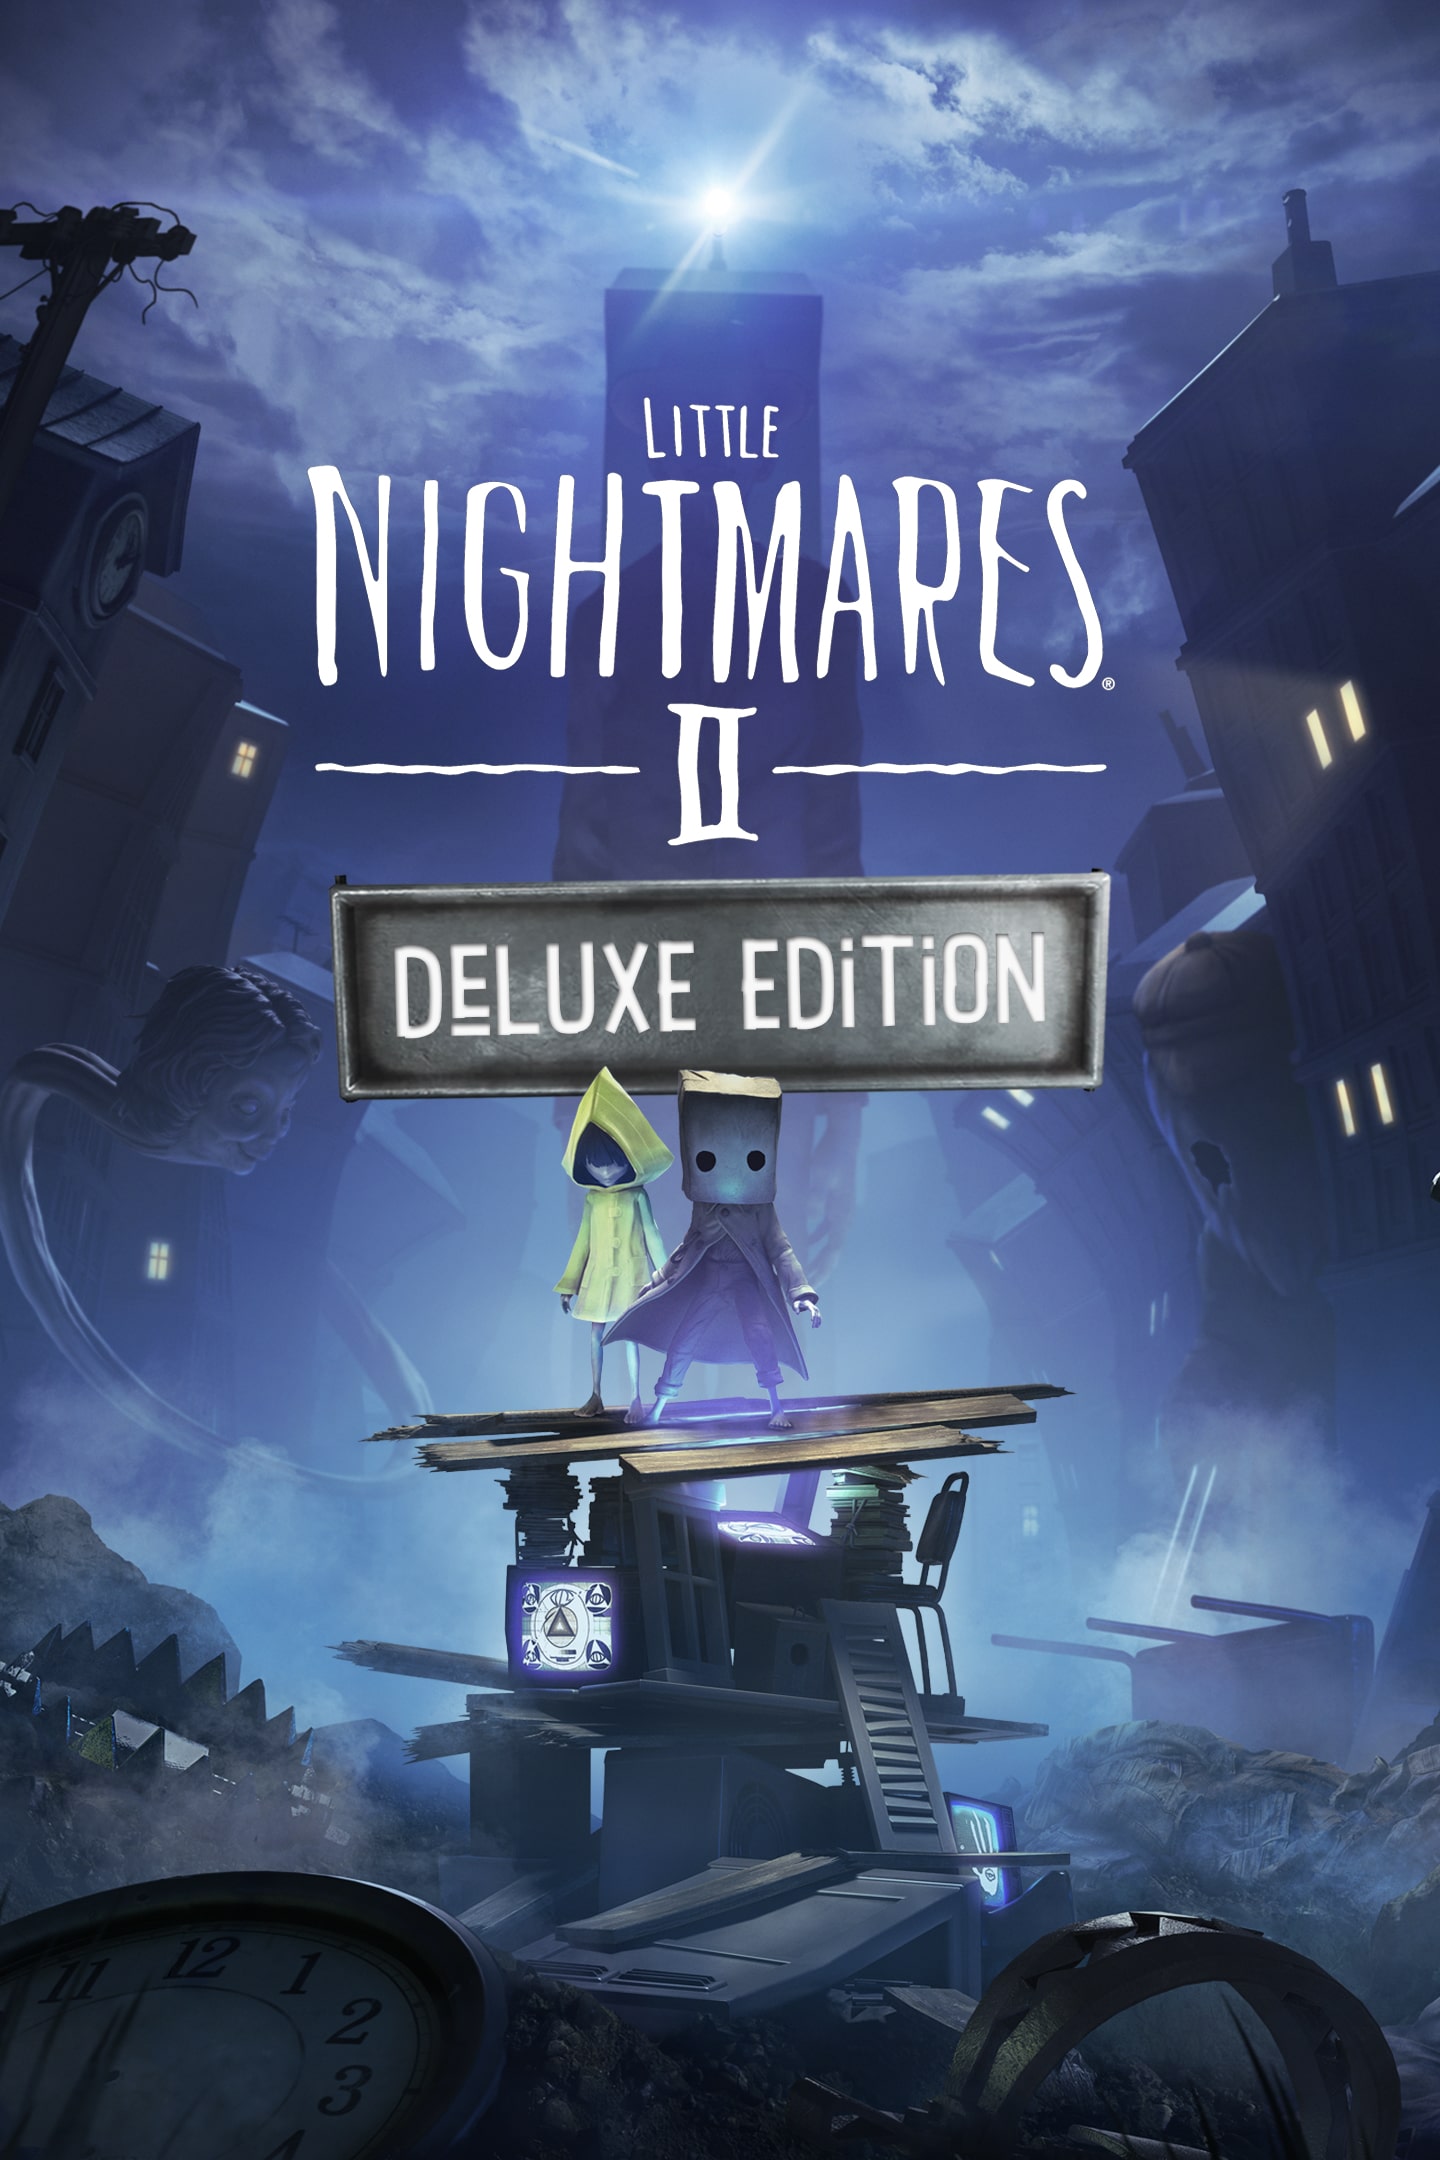 Little Nightmares II - Meus Jogos